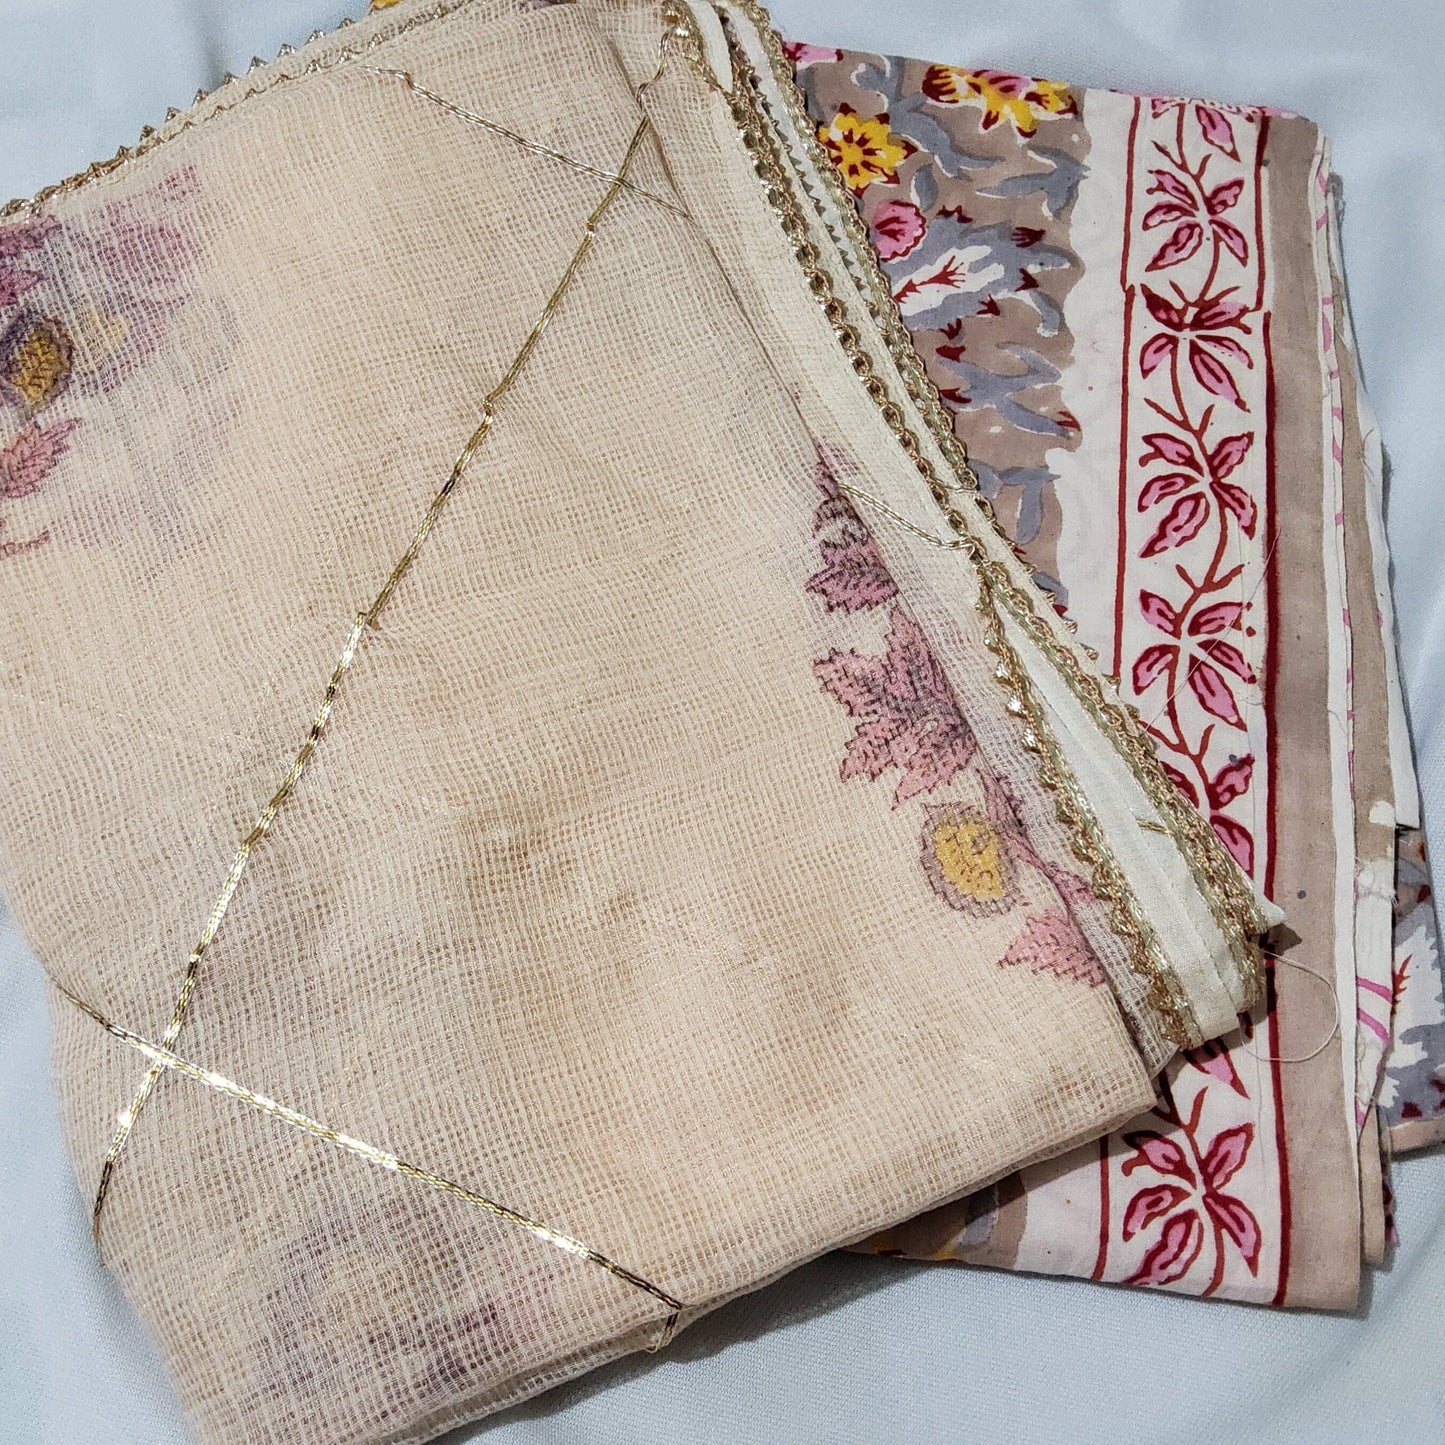 Bagru Printed Cotton Dress Material with Kota Doriya dupatta